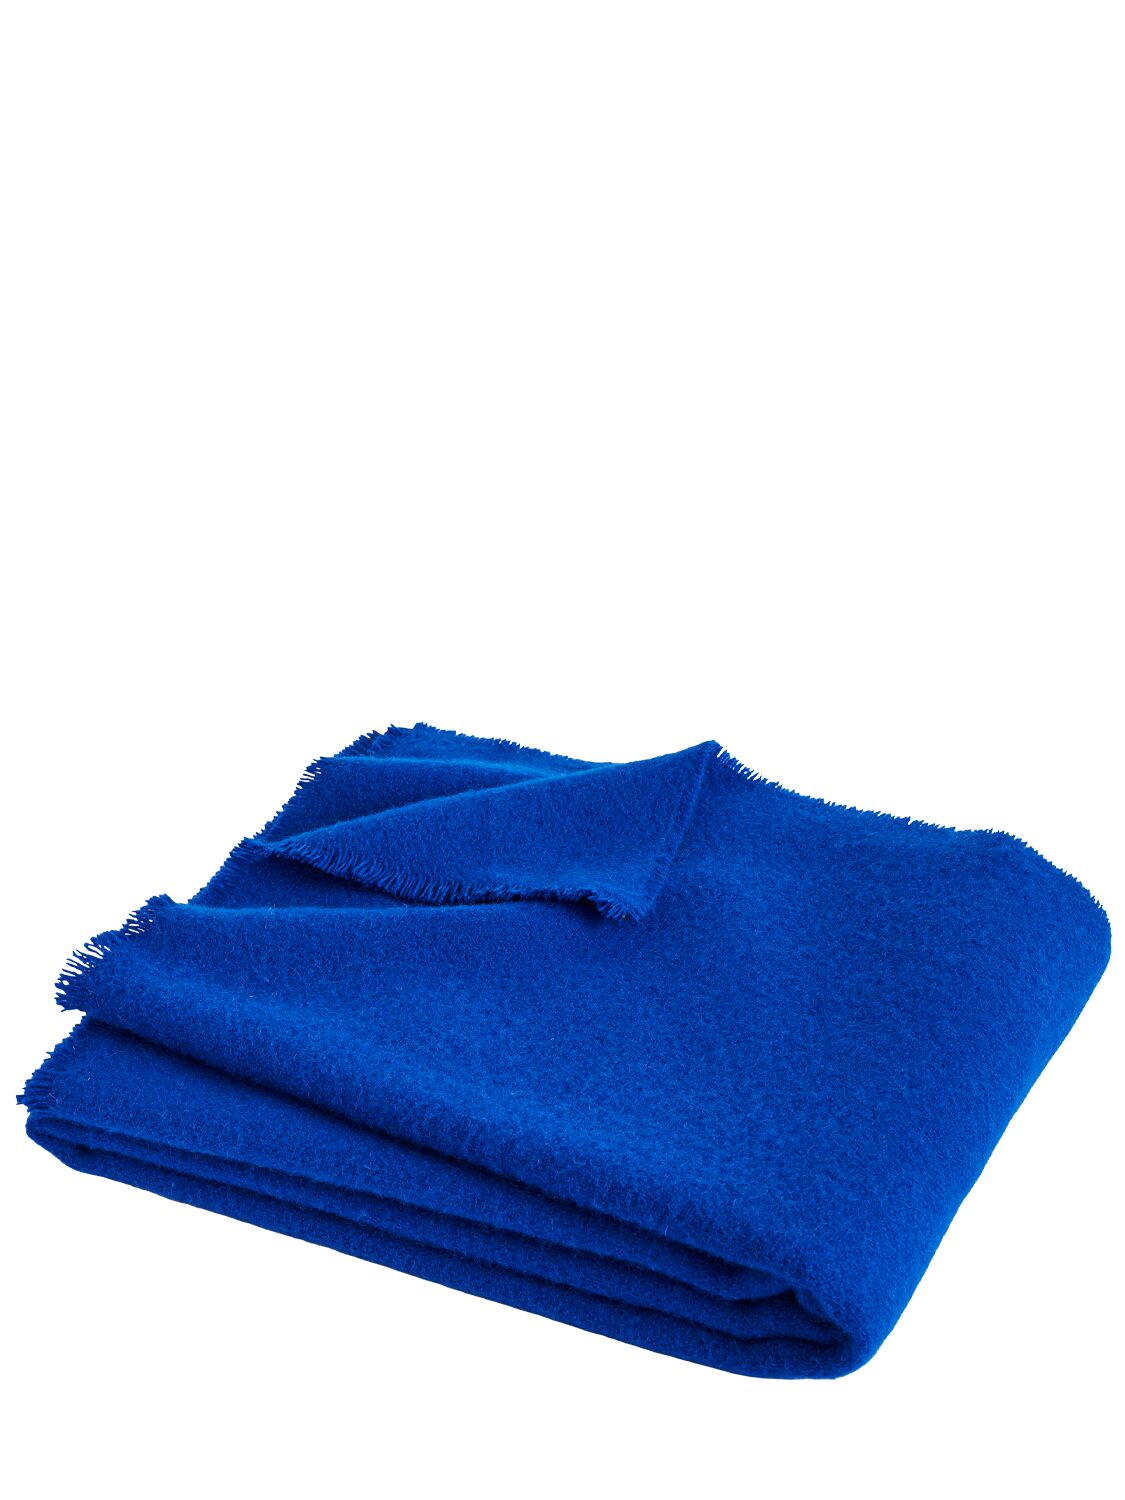 Image of Ultramarine Mono Blanket